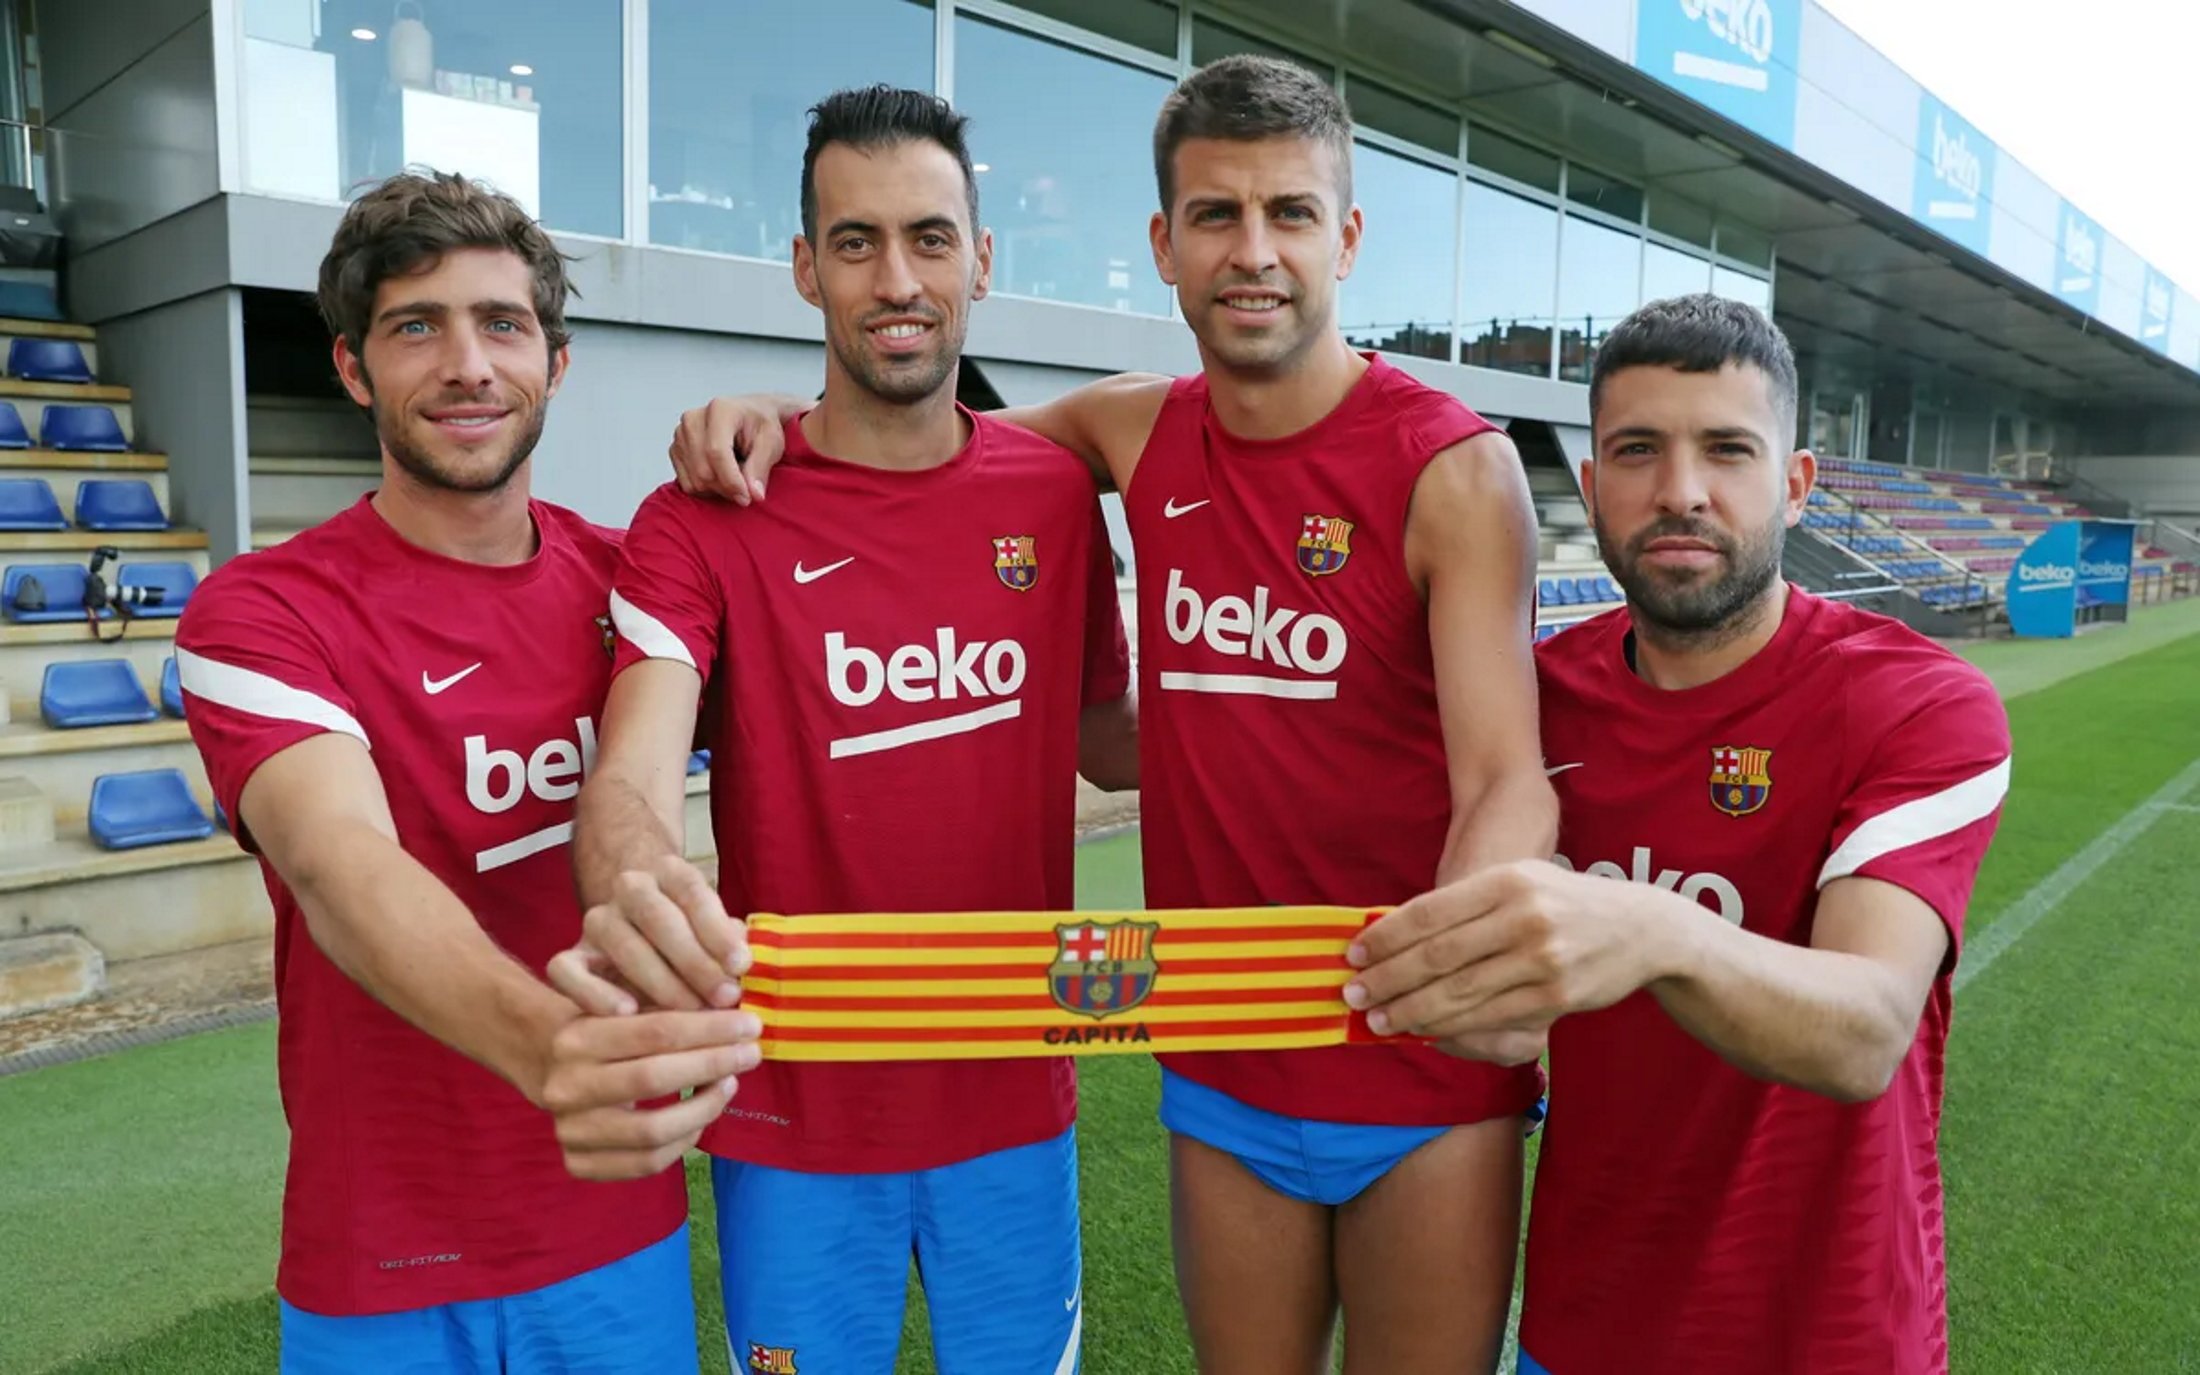 Le comunica a Piqué y a sus amigos de vestuario que se va del Barça después de toda un vida: decisión tomada